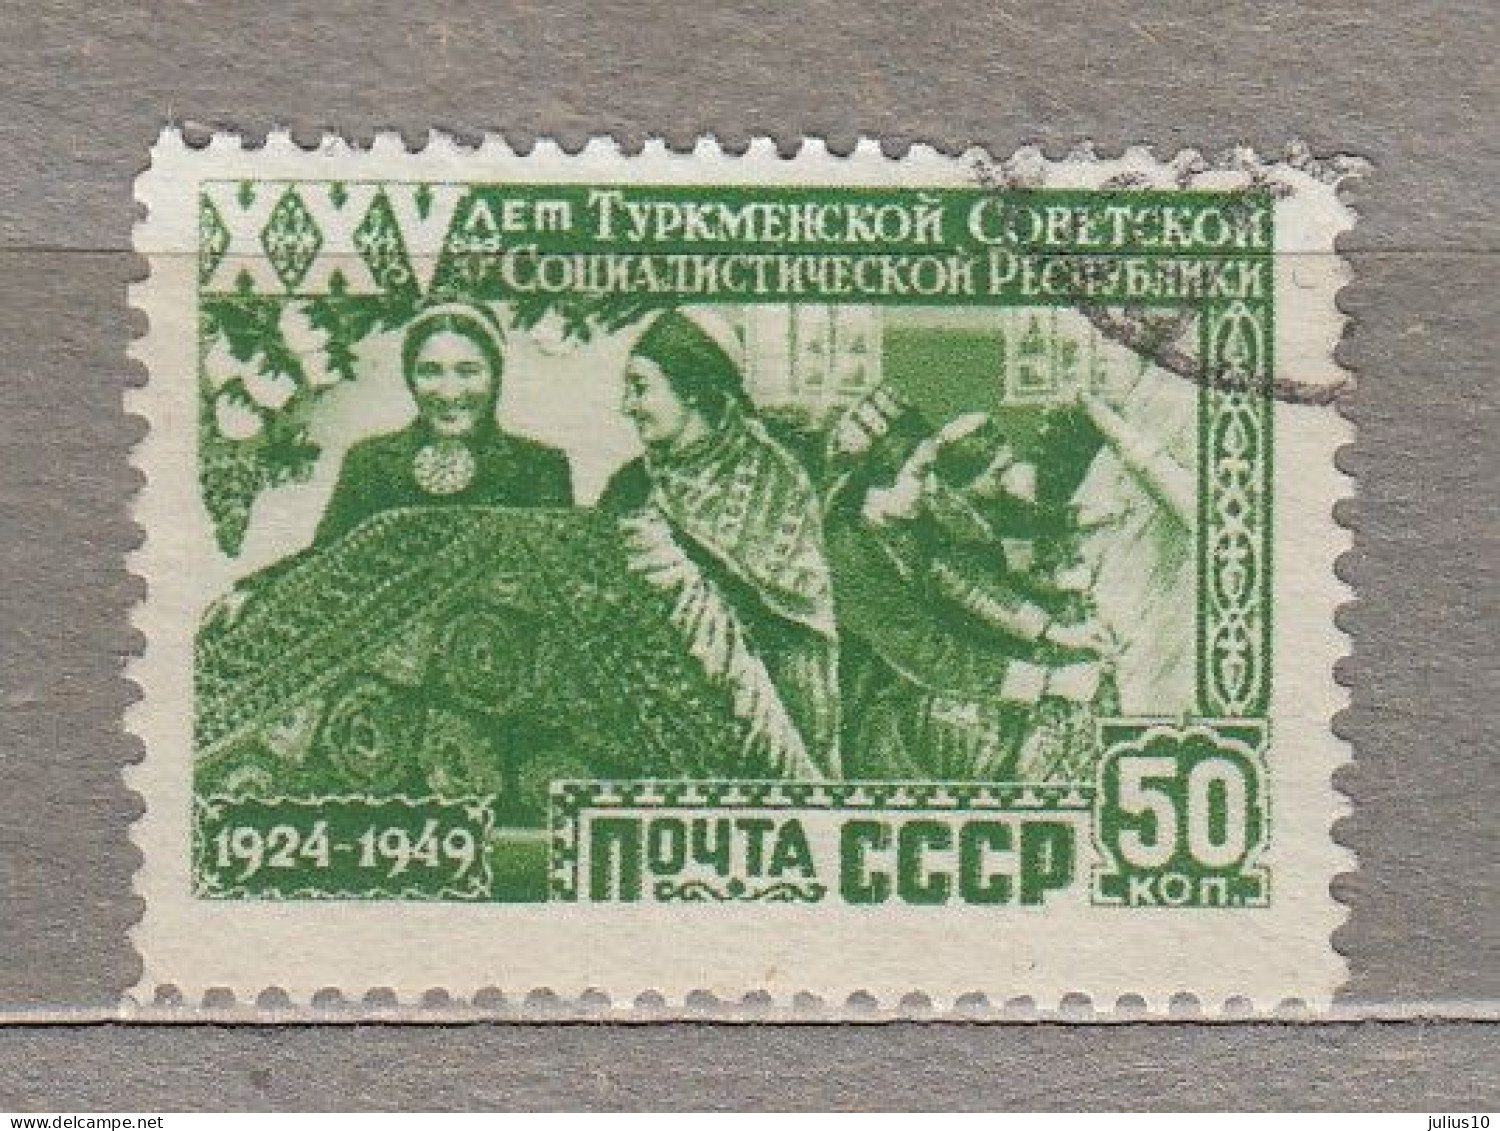 RUSSIA USSR 1950 Turkmenistan Used(o) Mi 1440 #Ru152 - Turkmenistan